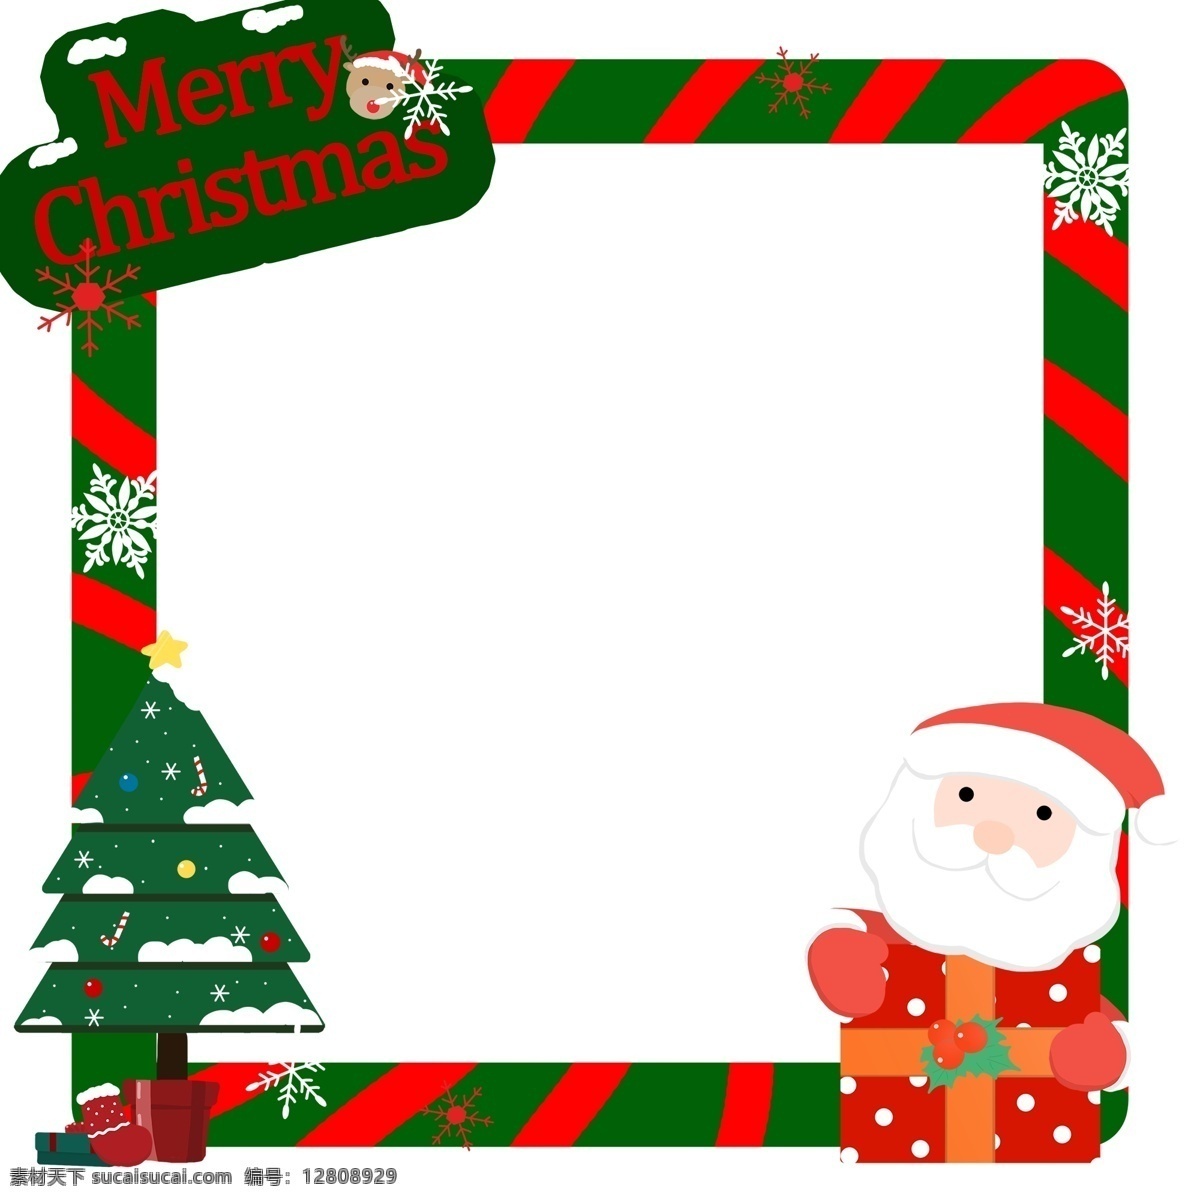 圣诞节 圣诞老人 松树 边框 圣诞 节日 星星 传统习俗 可爱 卡通风 童话风格 插画 壁纸 装饰画